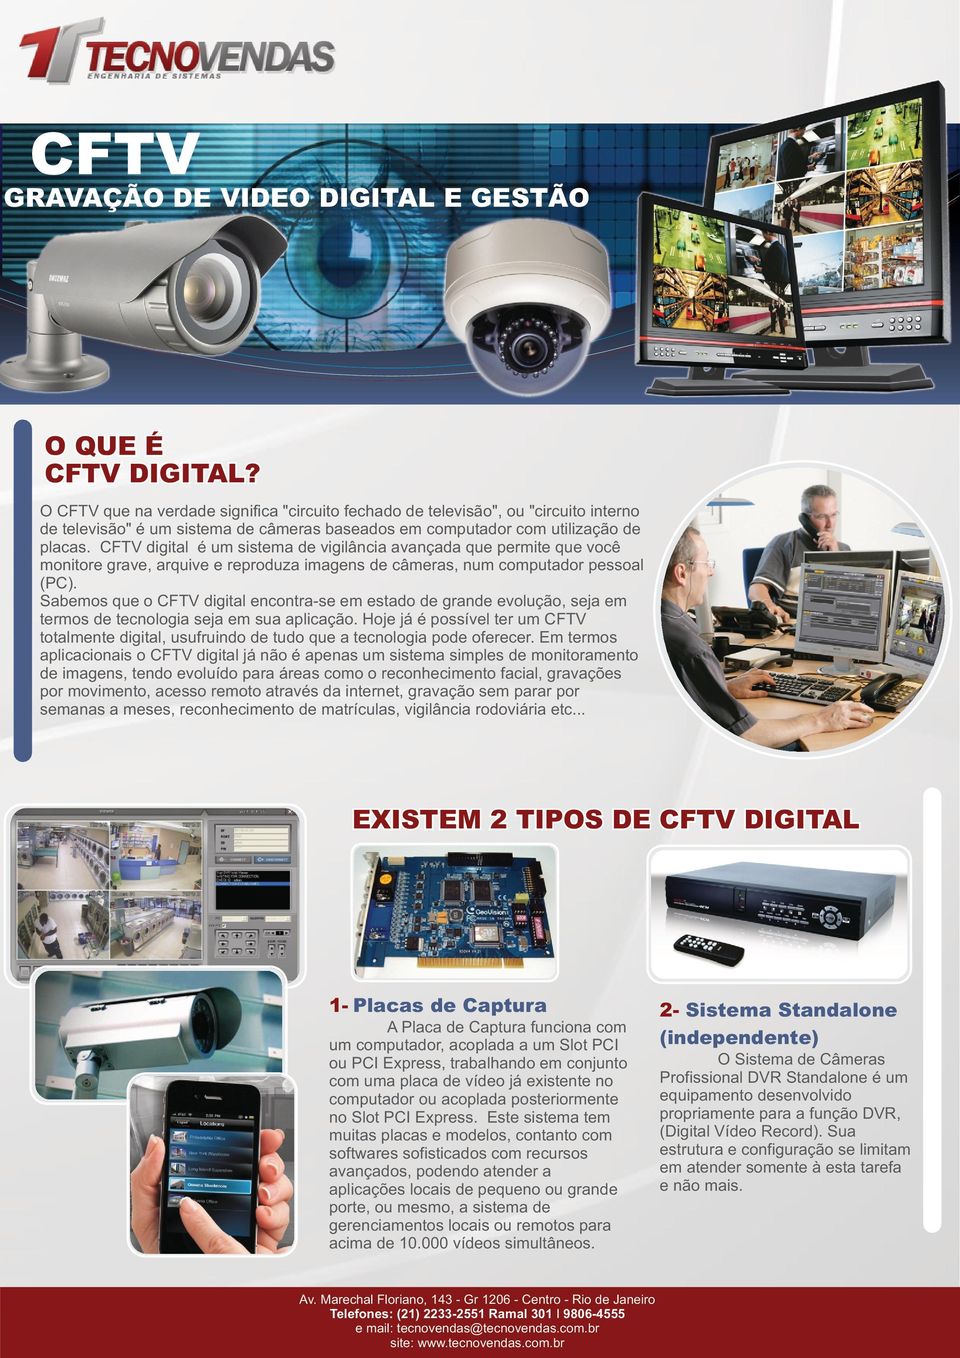 CFTV digital é um sistema de vigilâcia avaçada que permite que você moitore grave, arquive e reproduza images de câmeras, um computador pessoal (PC).